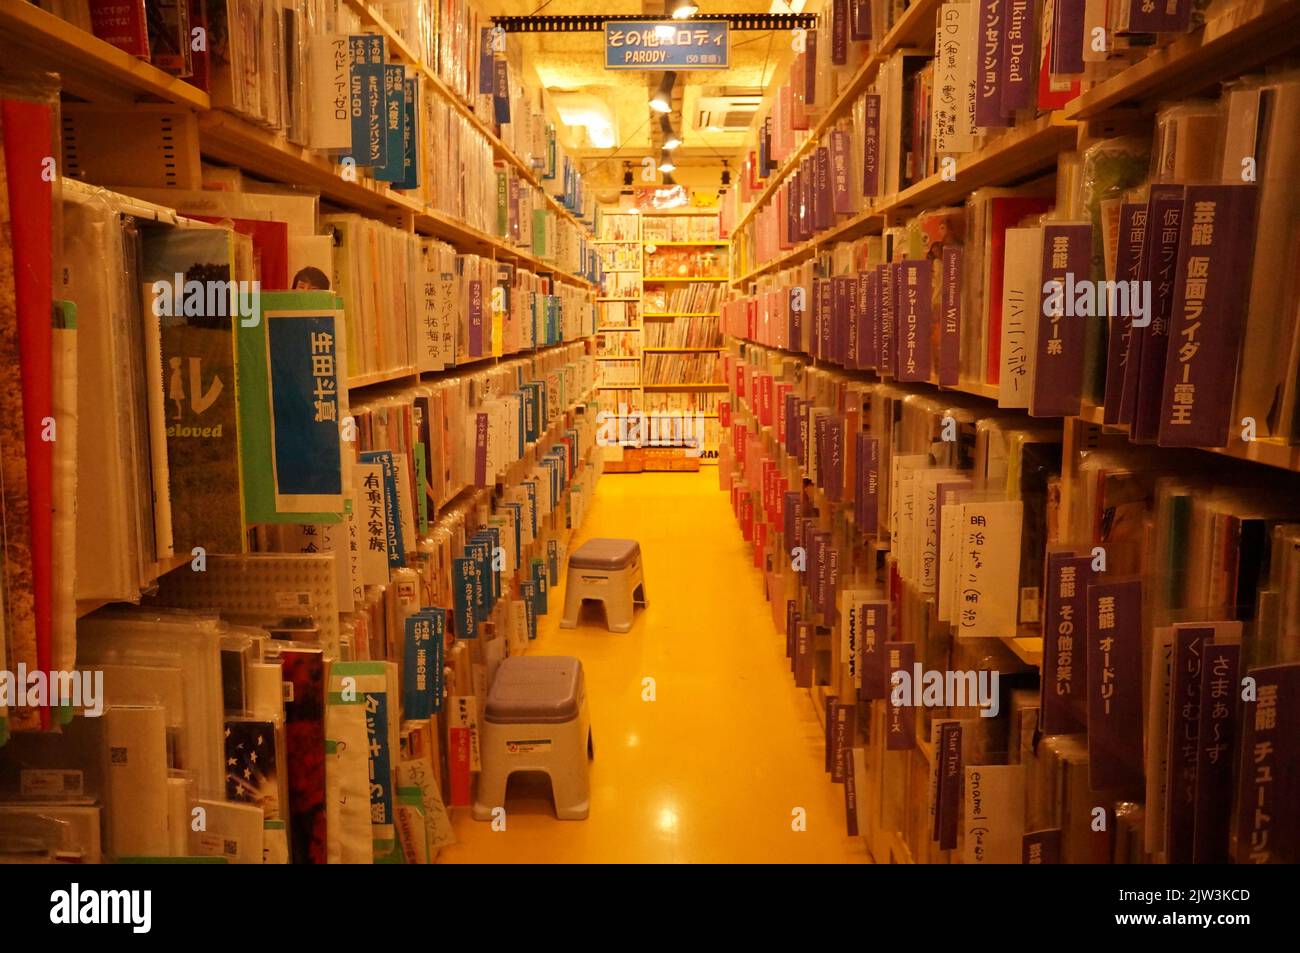 Boutique de livres et de mangas à Tokyo Japon Banque D'Images